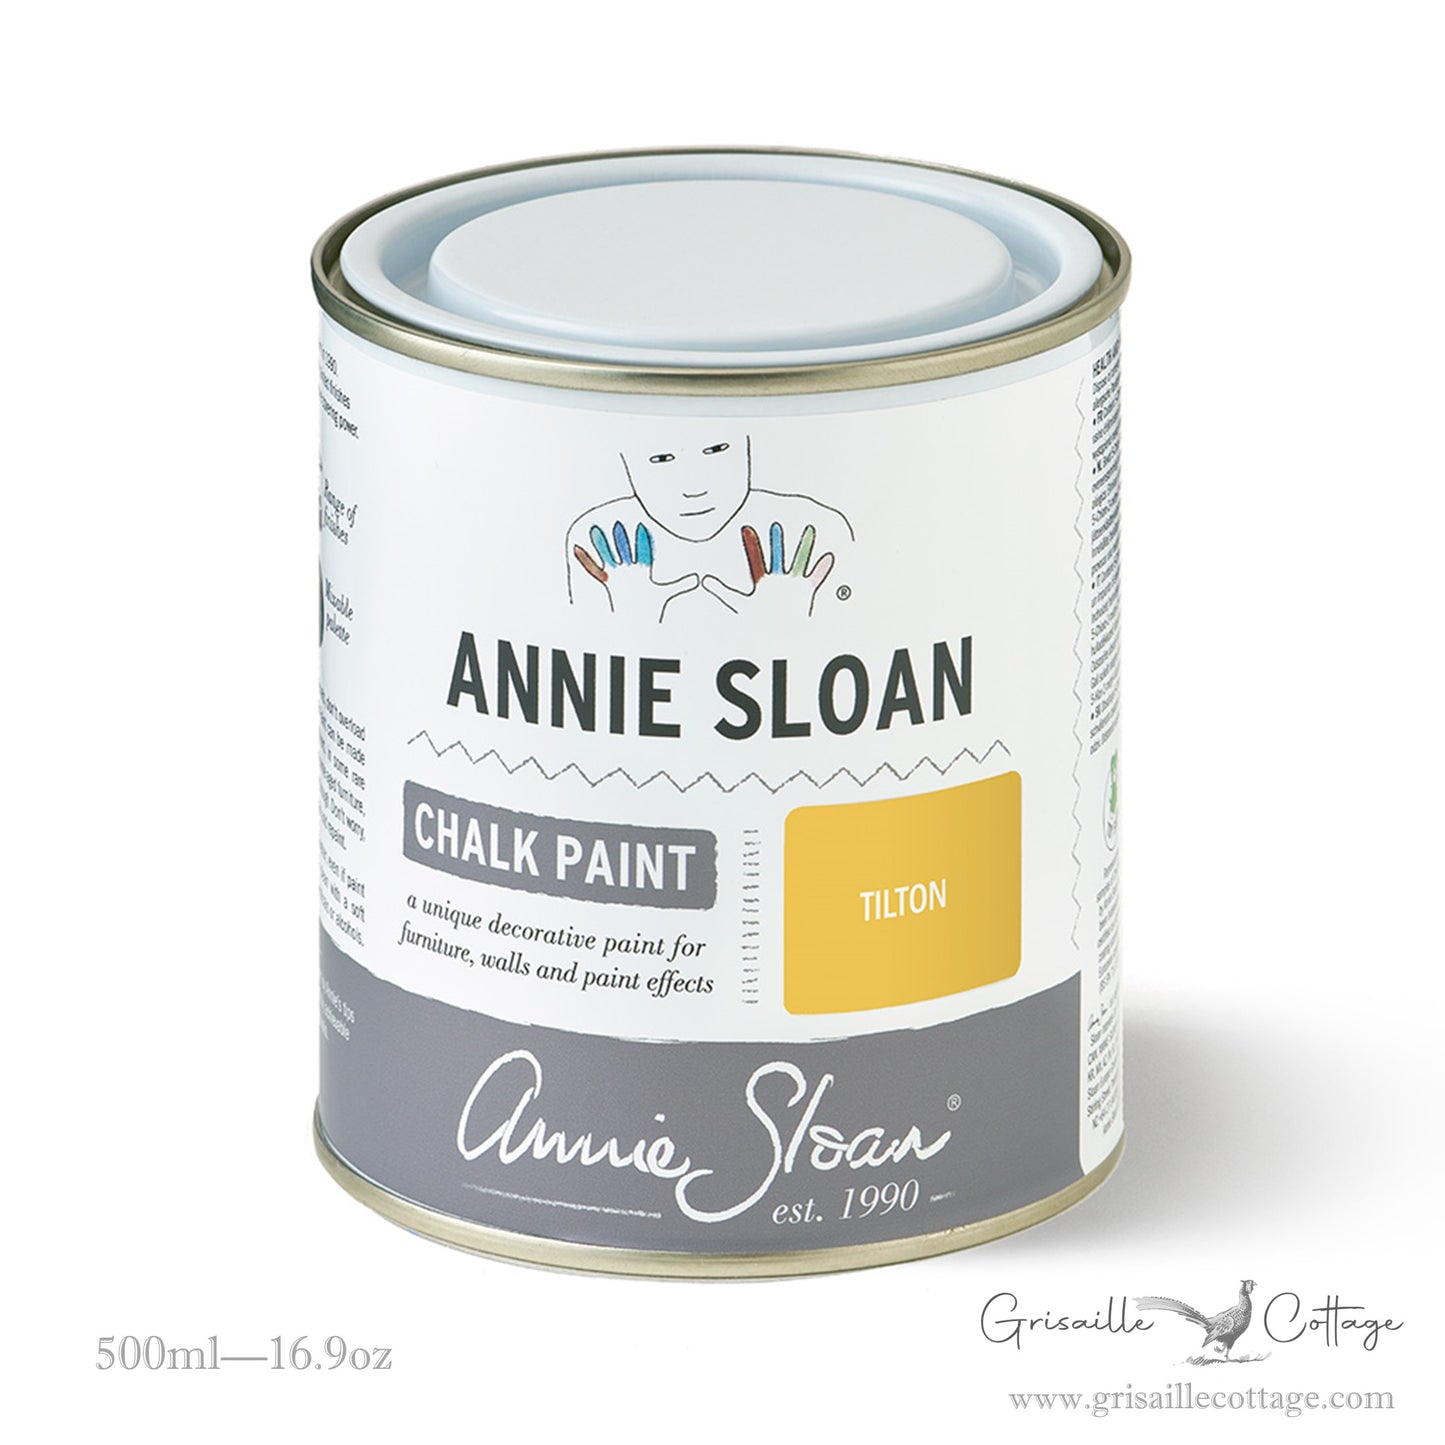 Tilton - Annie Sloan Chalk Paint